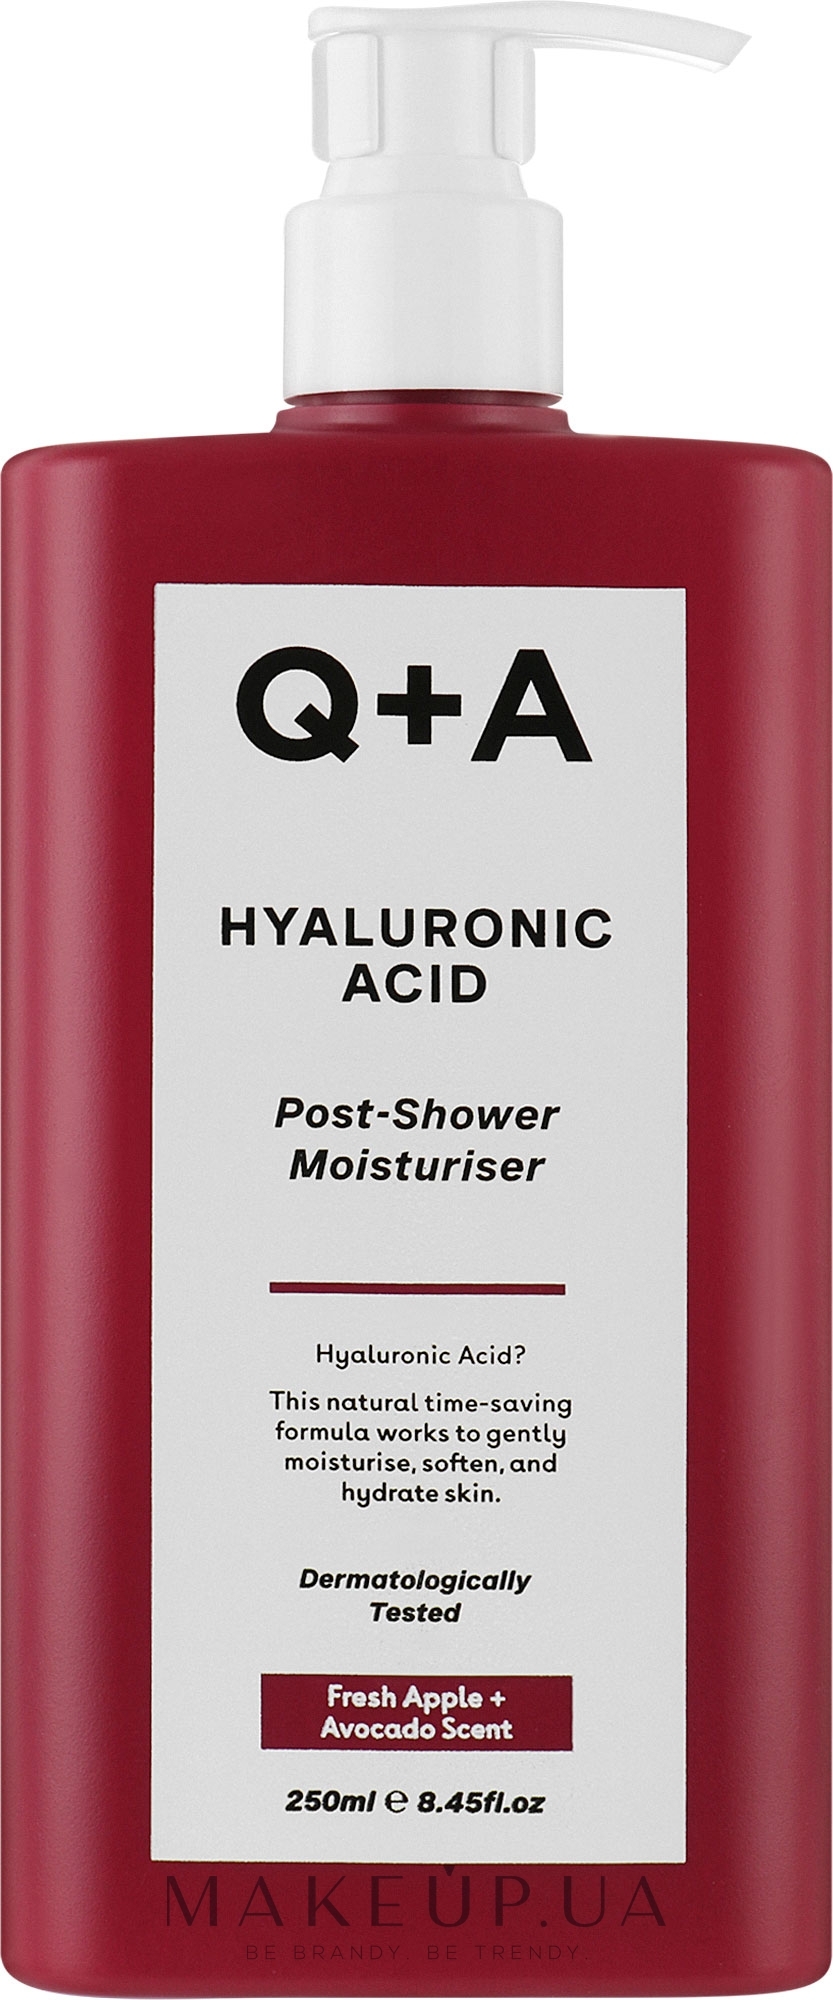 Зволожувальний крем після душу з гіалуроновою кислотою - Q+A Hyaluronic Acid Post-Shower Moisturiser — фото 250ml